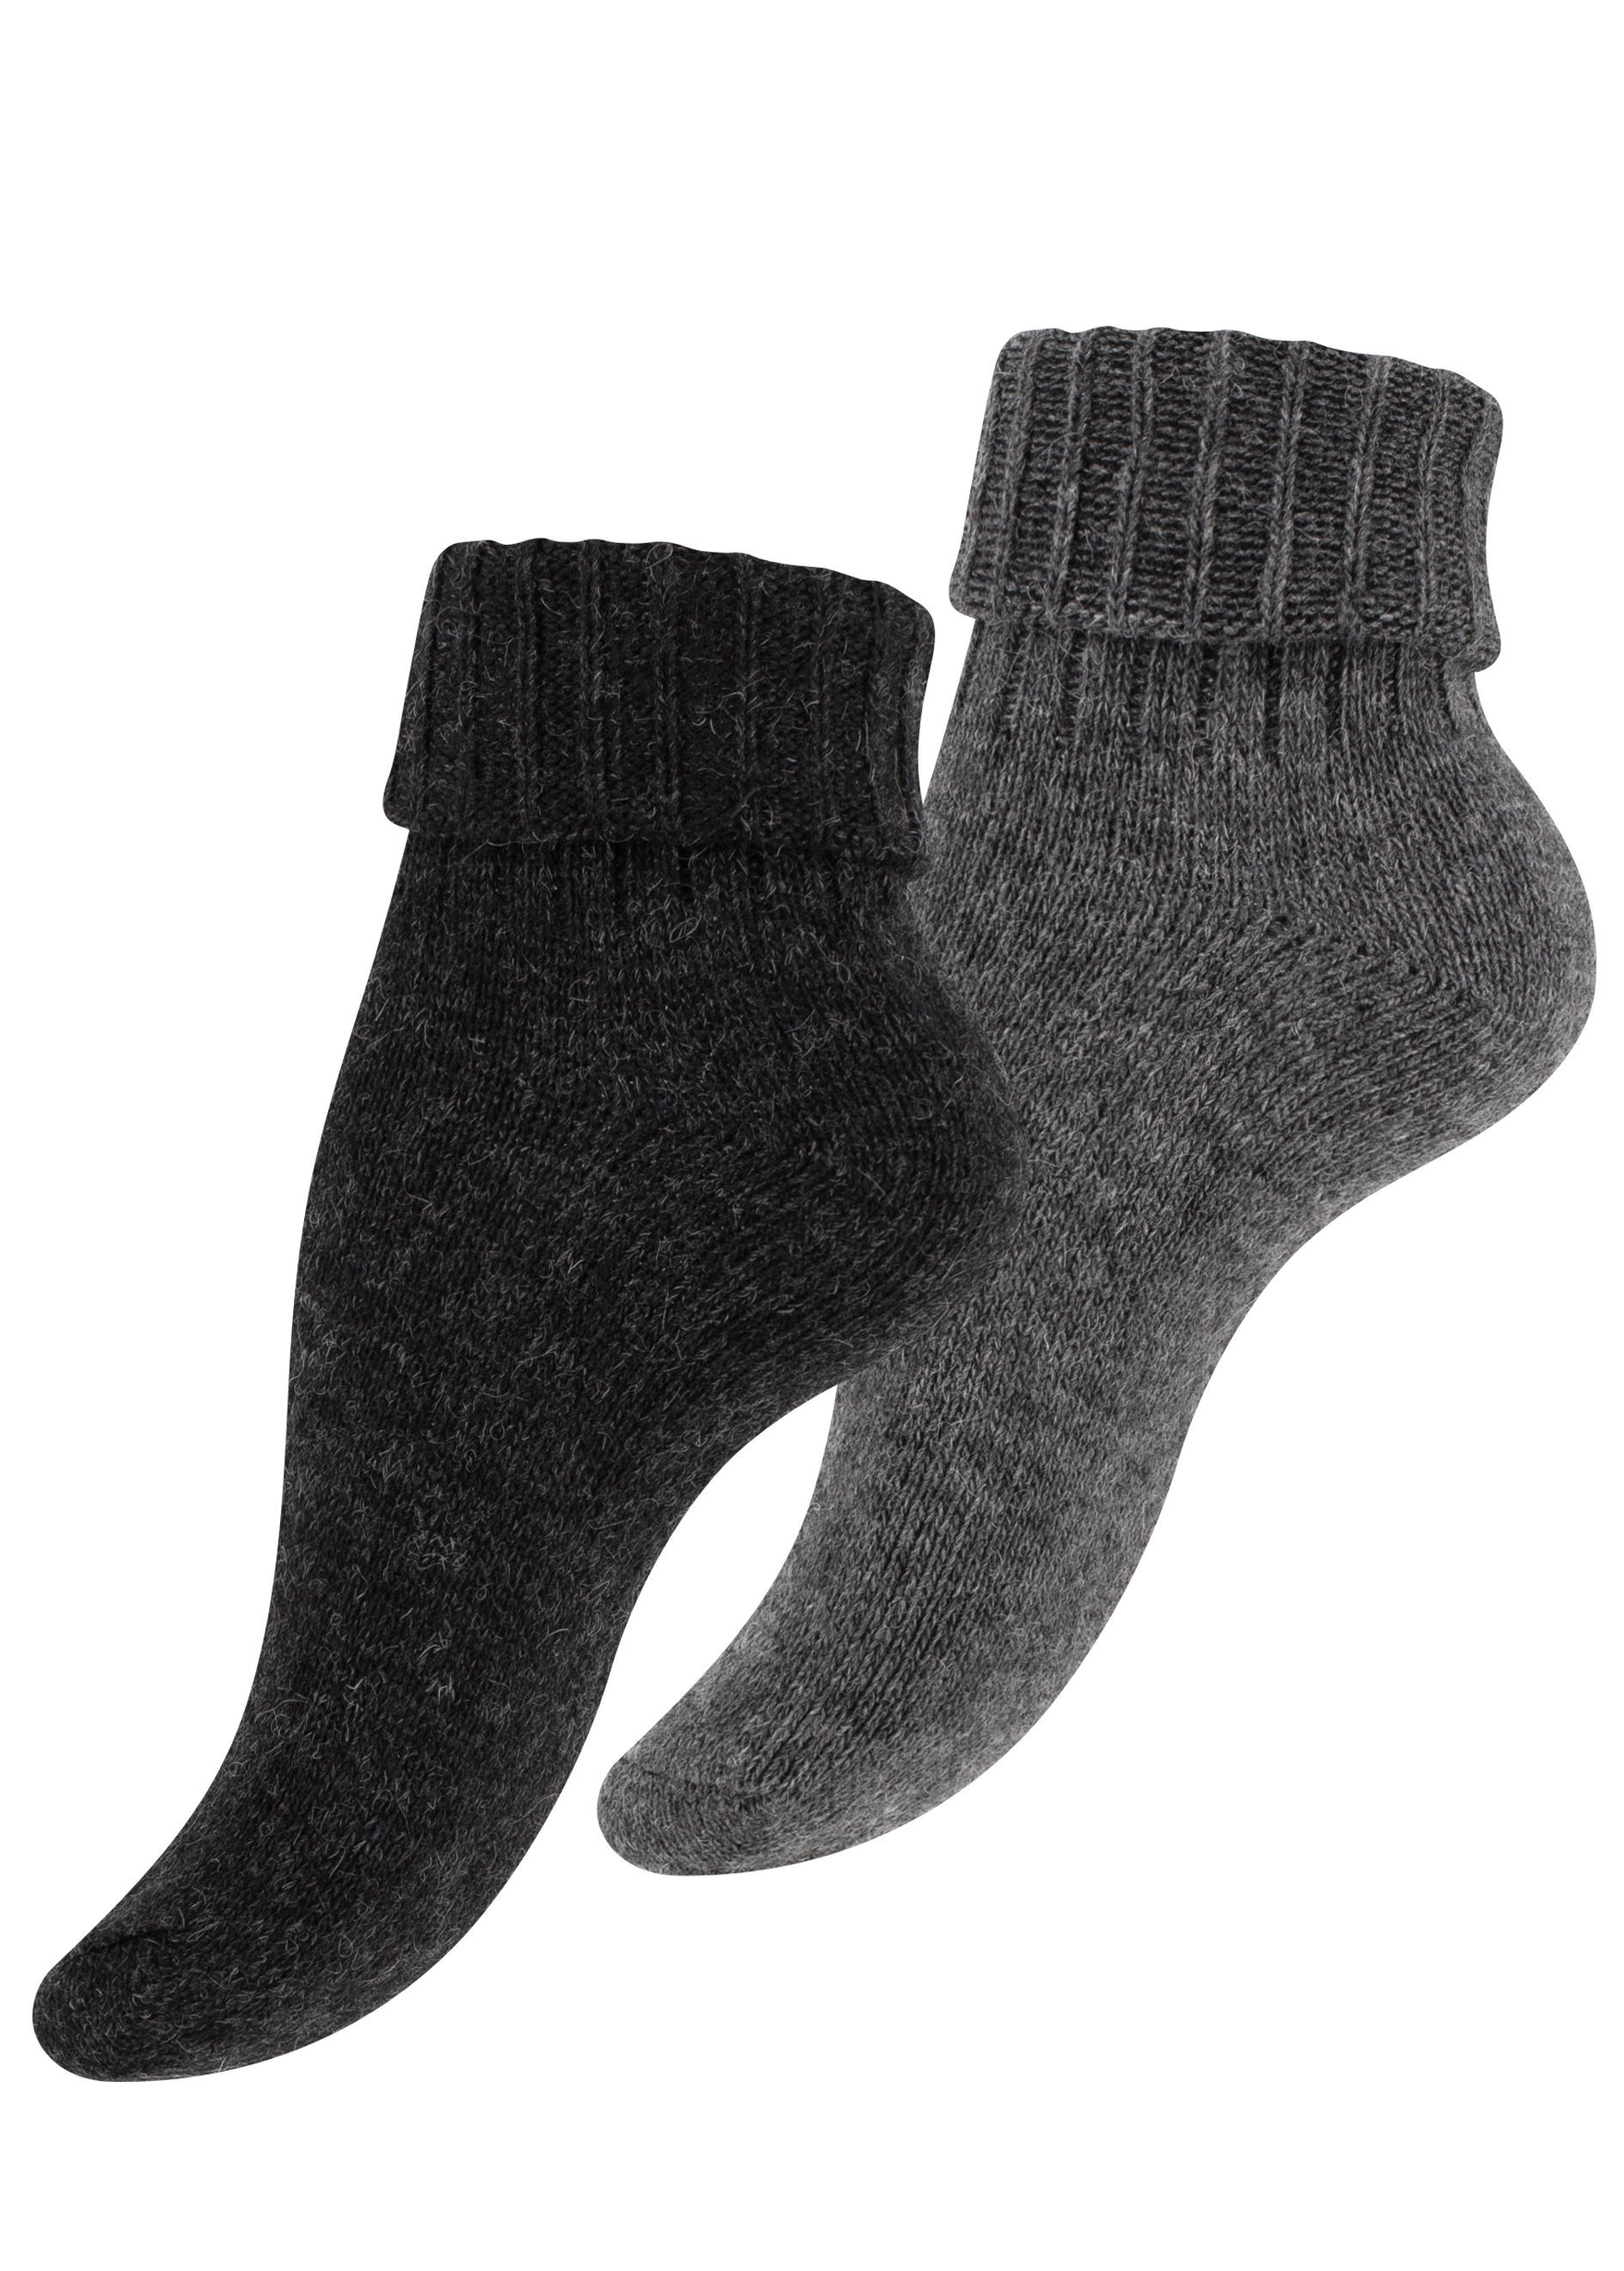 Cotton Prime® Socken Alpaka Socken mit Umschlag (2-Paar) ökologisch gefärbt und vorgewaschen anthrazit/grau | Socken